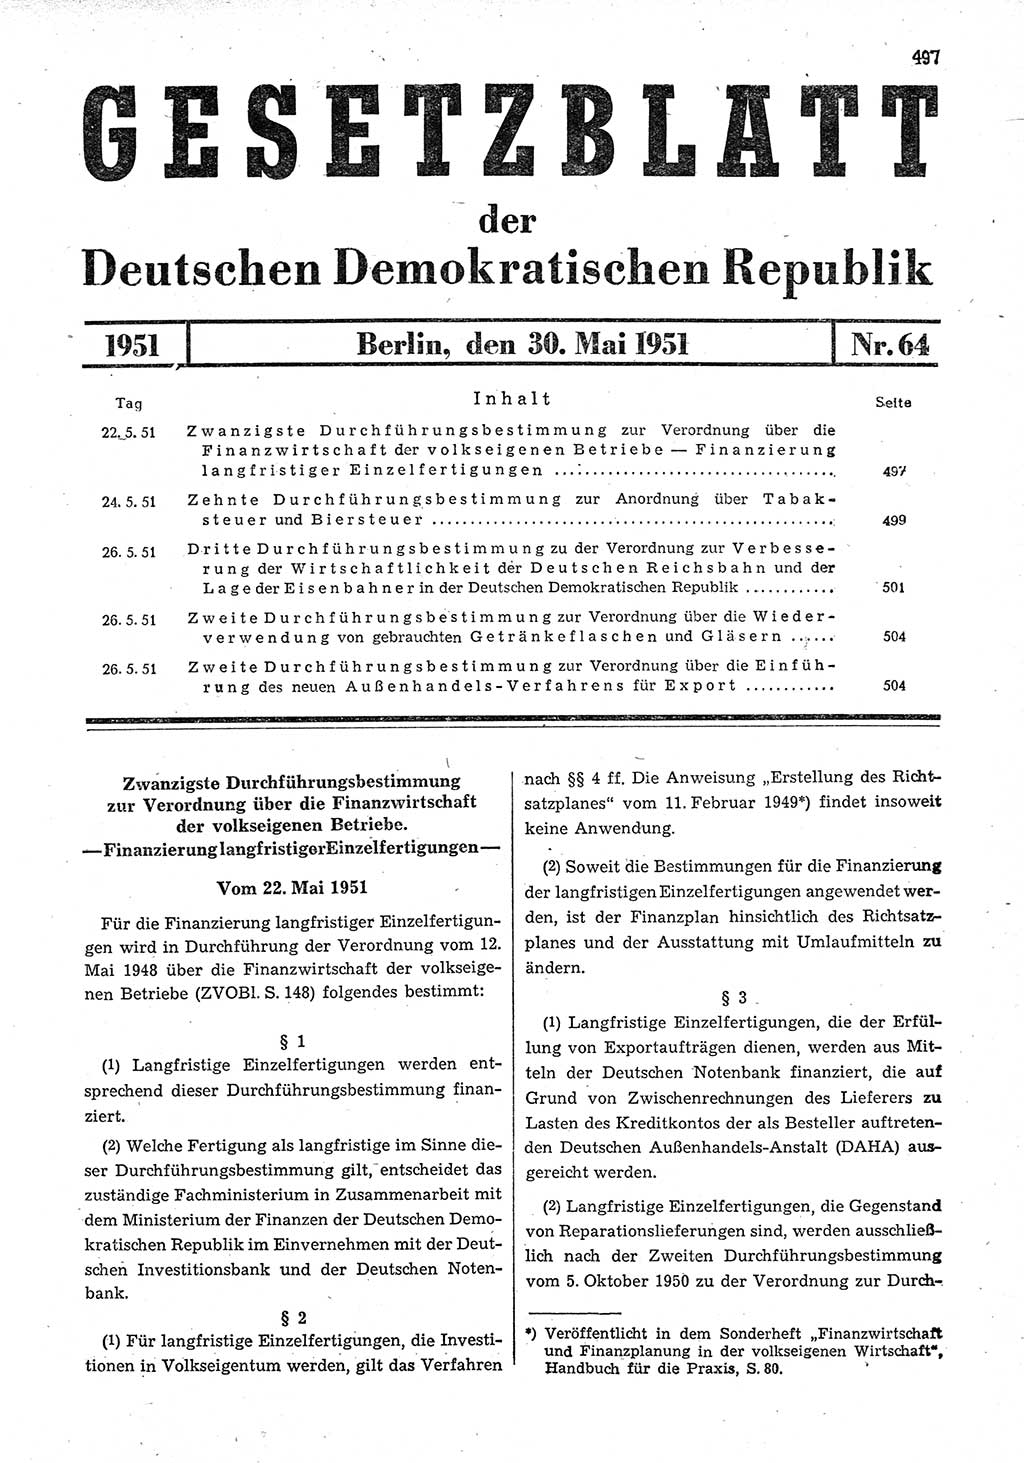 Gesetzblatt (GBl.) der Deutschen Demokratischen Republik (DDR) 1951, Seite 497 (GBl. DDR 1951, S. 497)